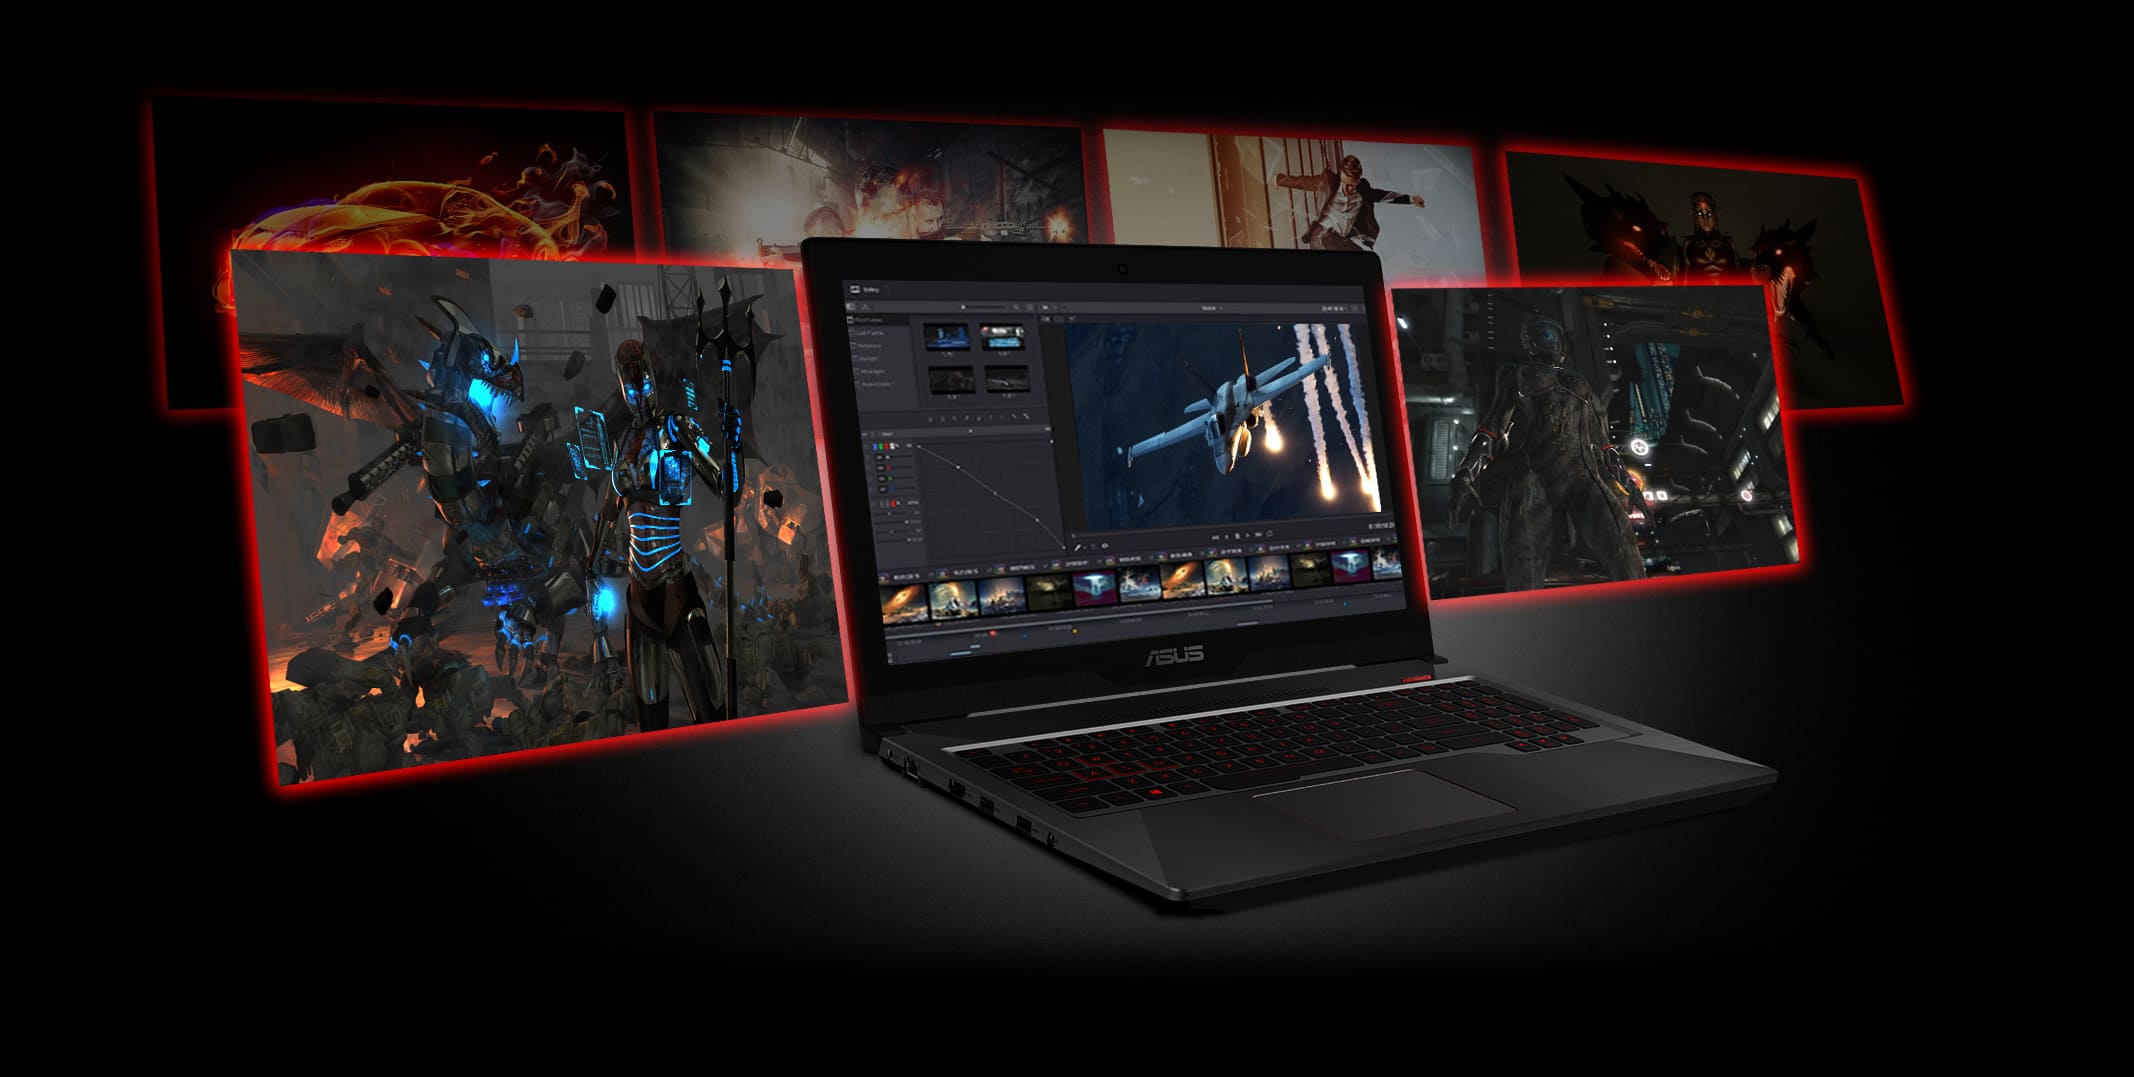 Asus FX503VD – Laptop chơi game tầm trung hiệu năng khủng, giá tốt